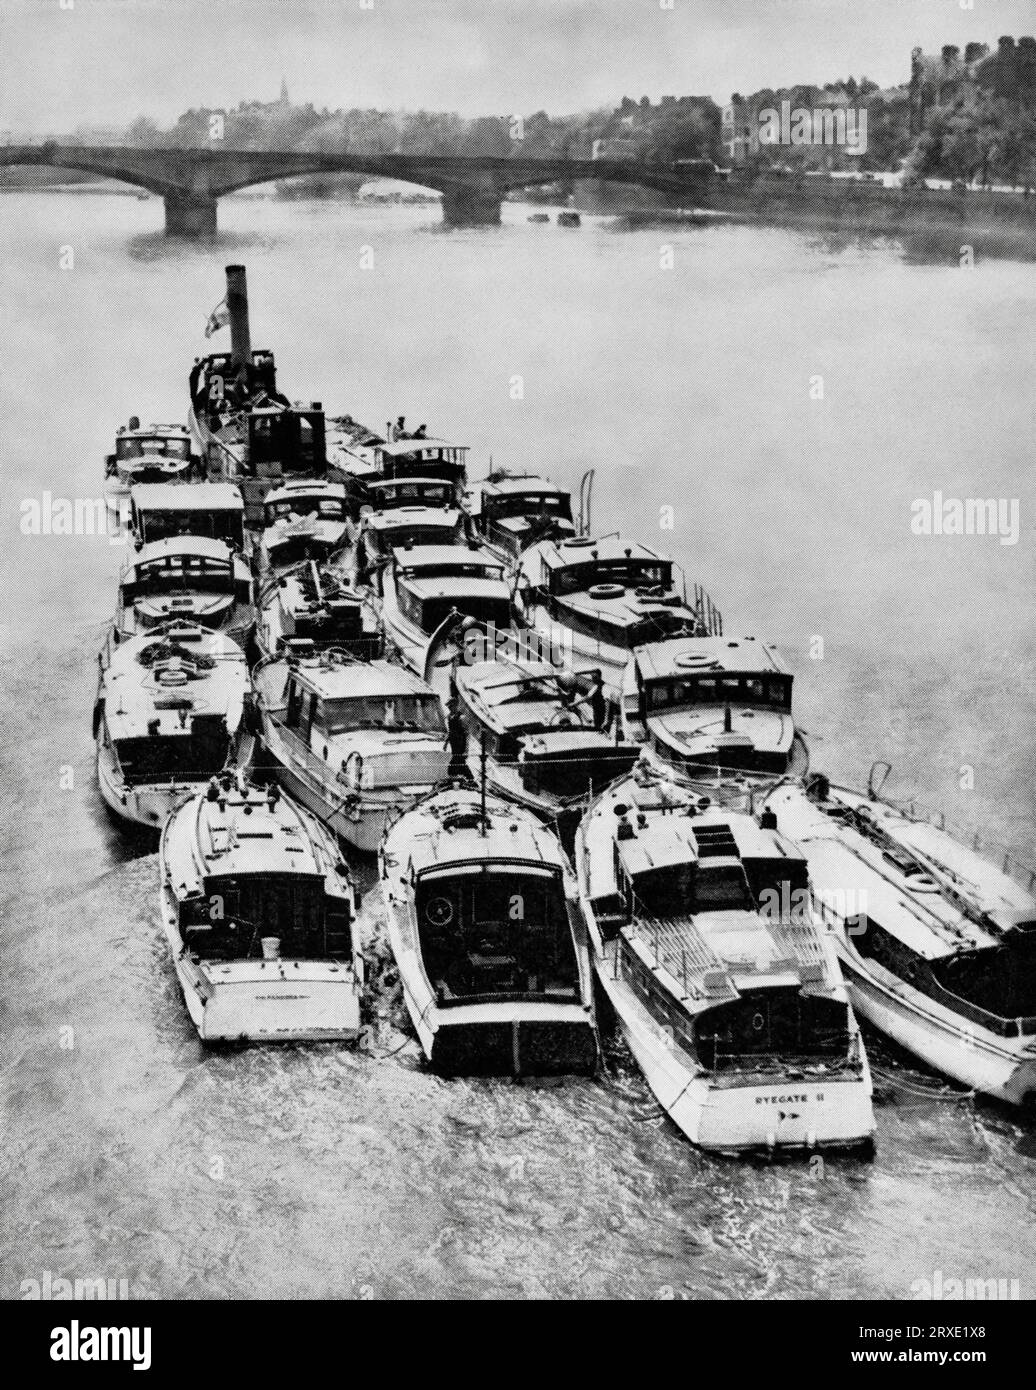 De petits bateaux sont transportés sur la Tamise à la suite de l'opération Dynamo. Ils ont été utilisés lors de l'évacuation de 338 000 soldats alliés pendant la Seconde Guerre mondiale des plages et du port de Dunkerque, dans le nord de la France, entre le 26 mai et le 4 juin 1940. Banque D'Images